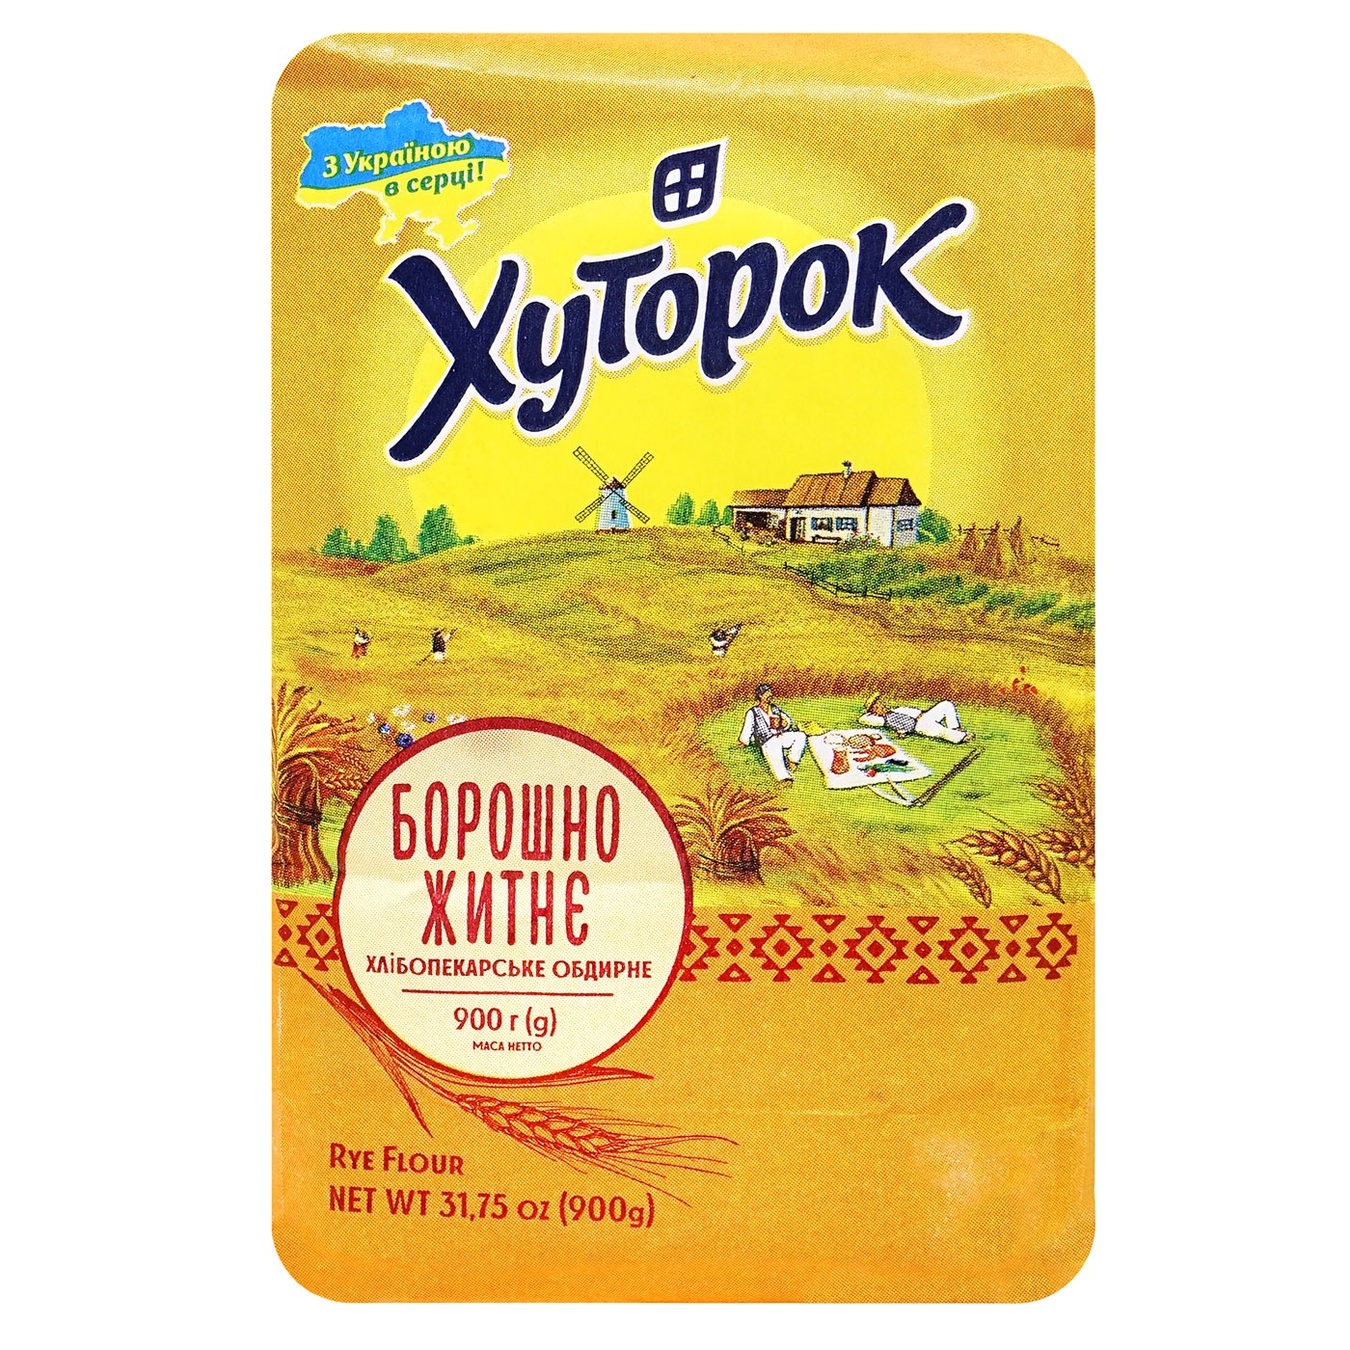 Khutorok rye flour 900g